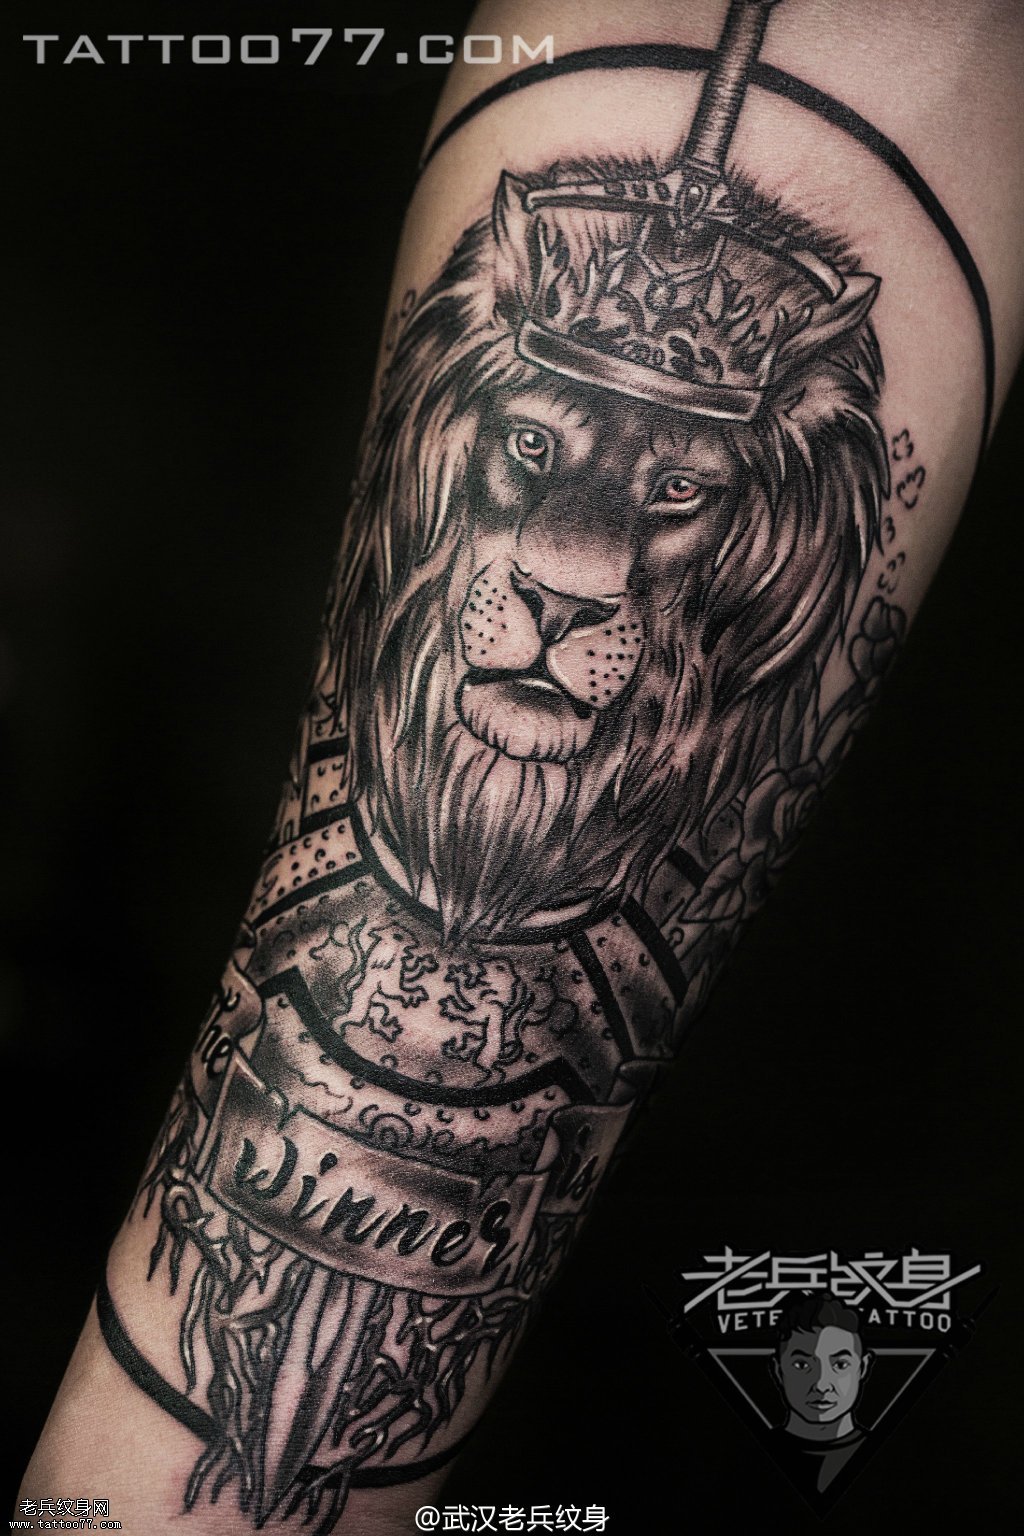 小花臂狮子王纹身图案作品